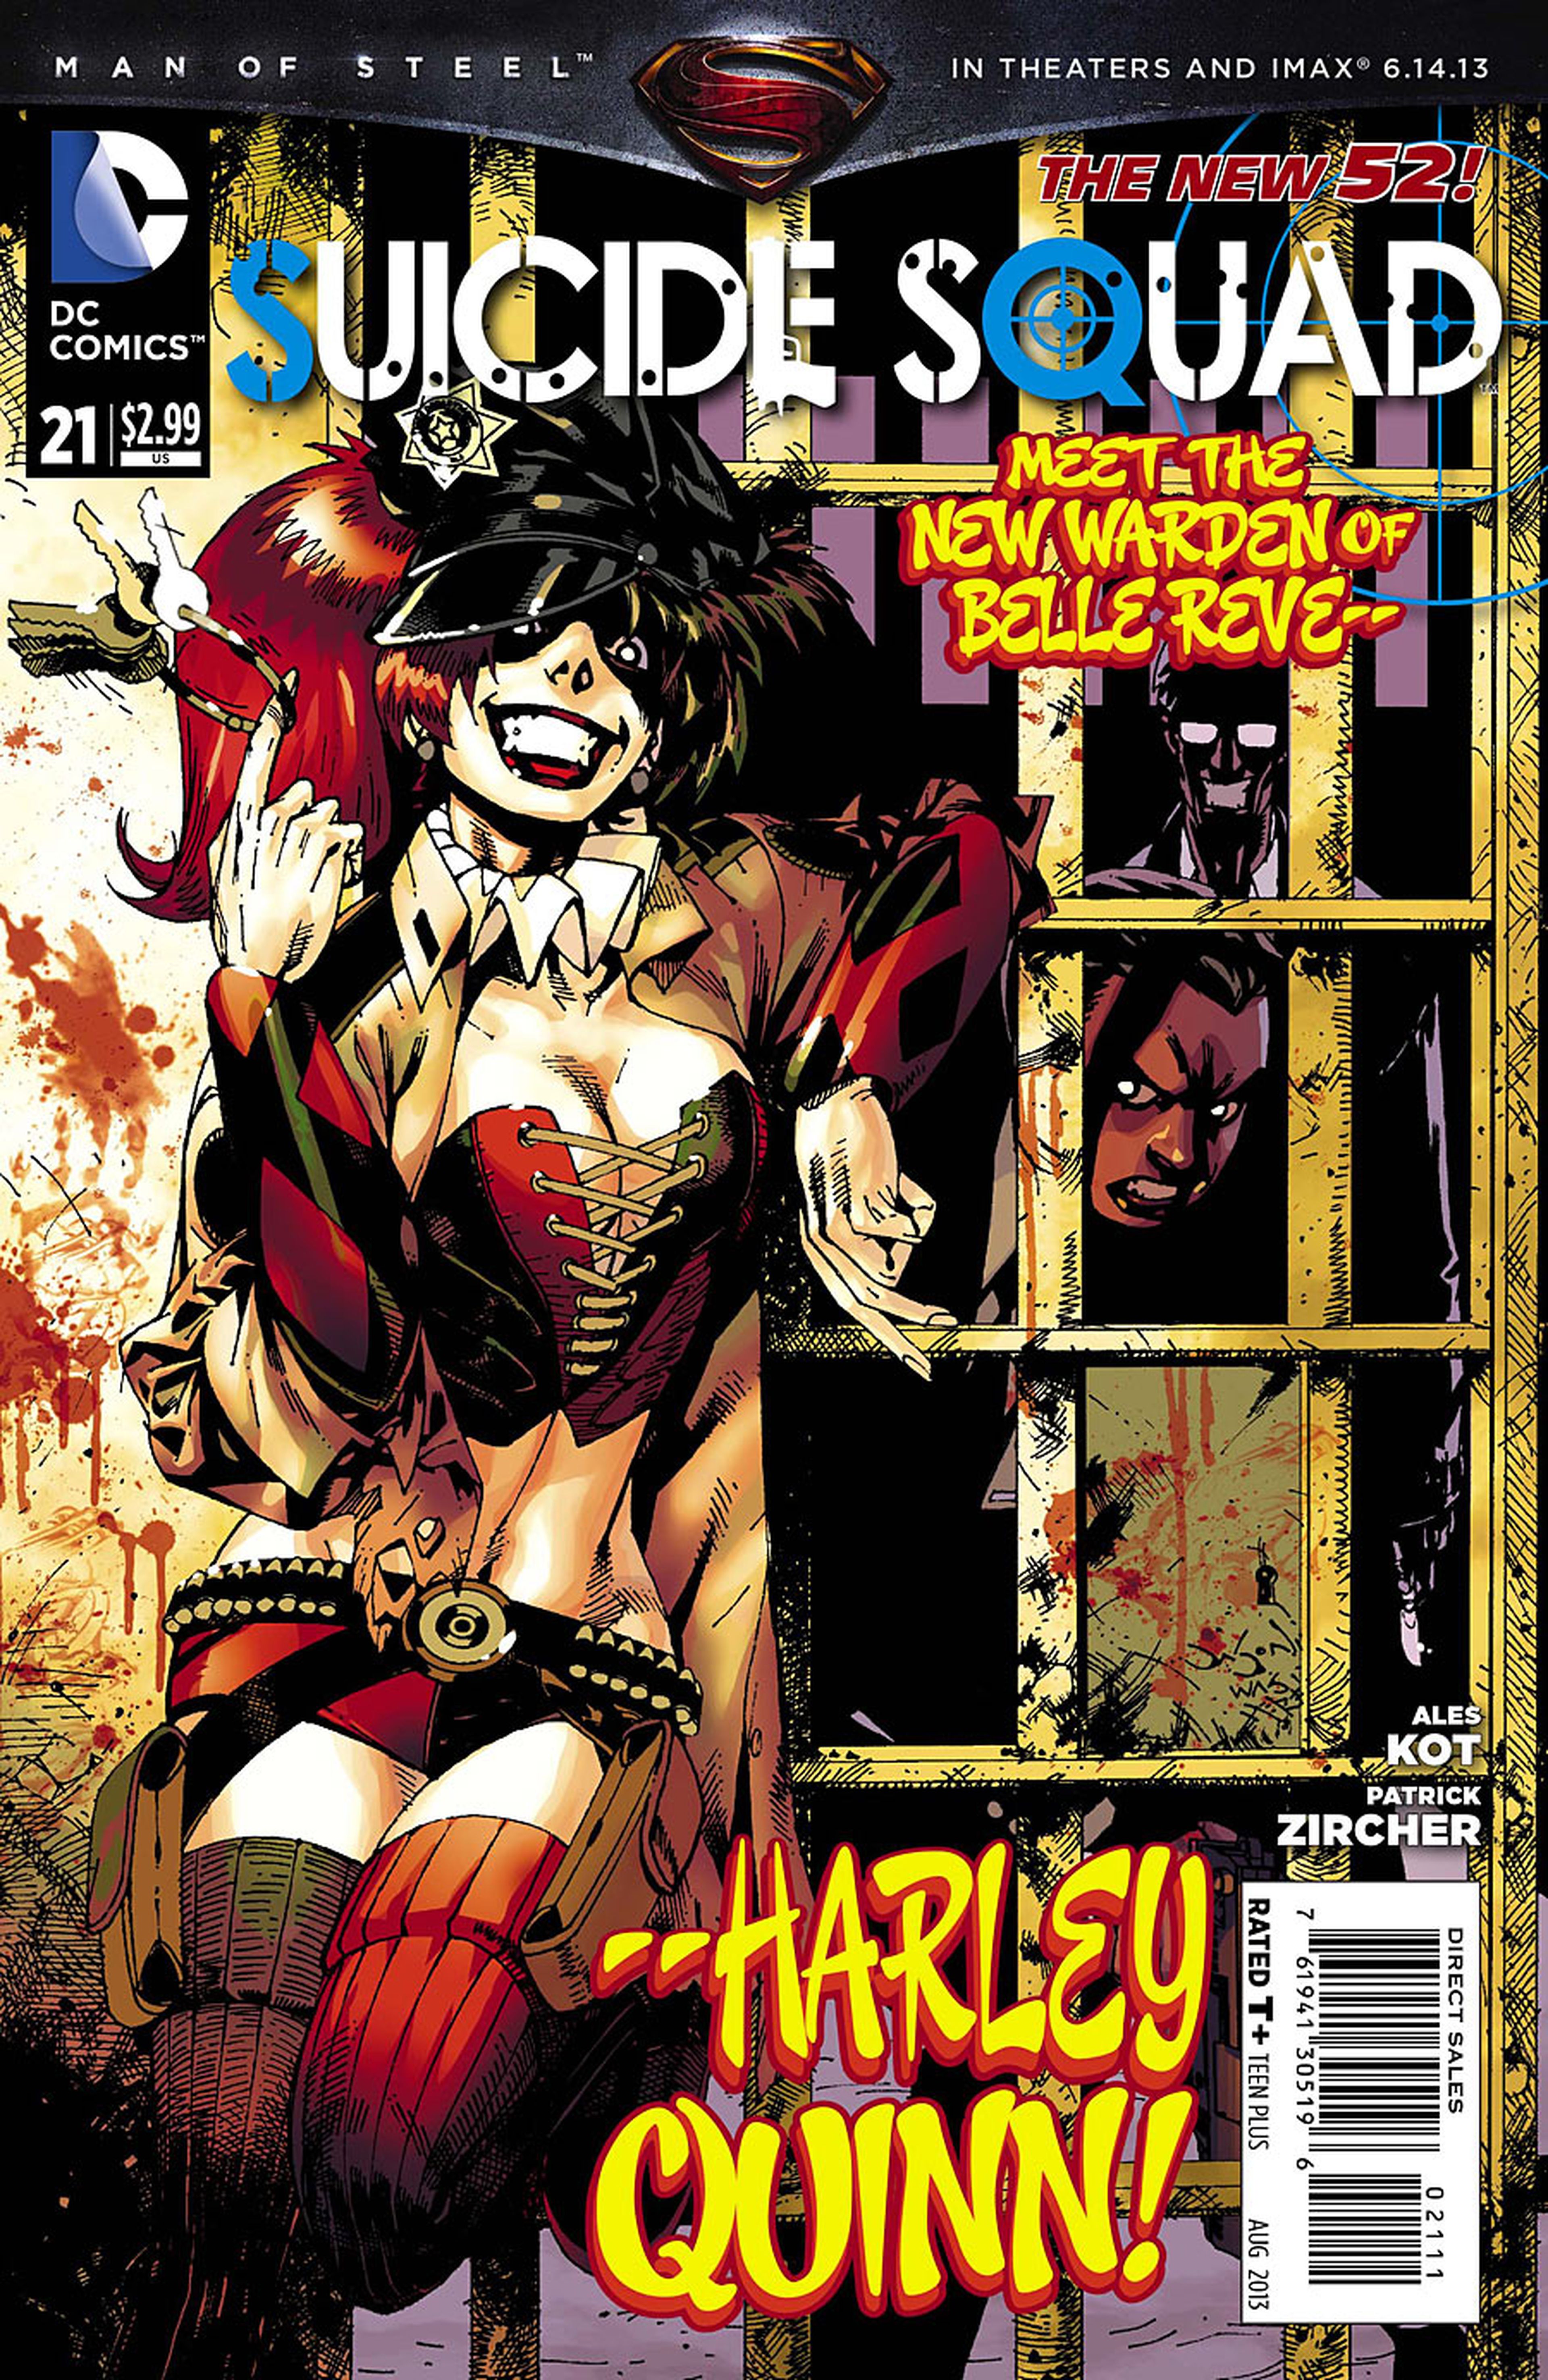 EEUU: Harley Quinn al mando, en Escuadrón Suicida